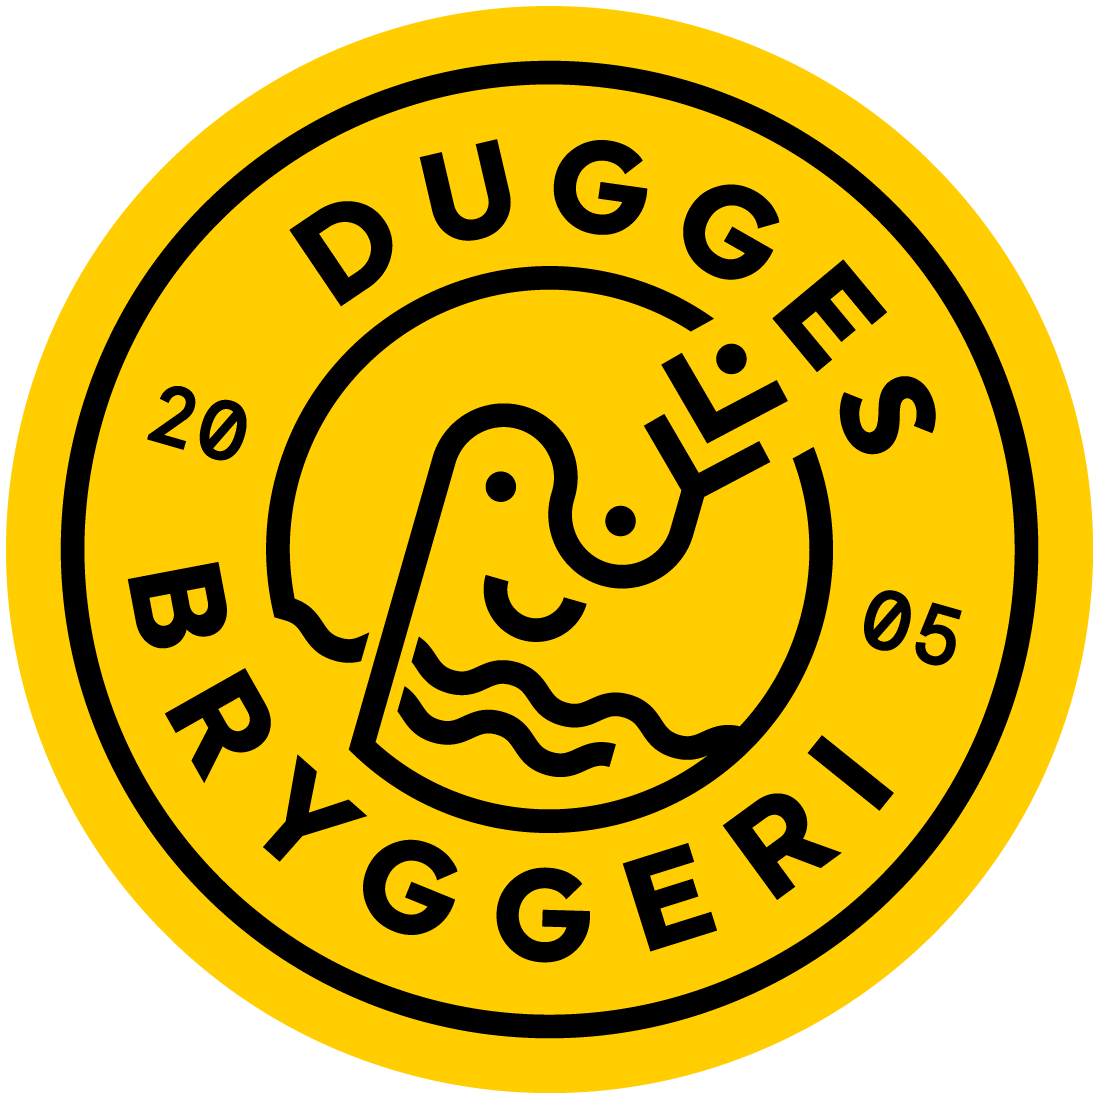 Dugges (SWE)